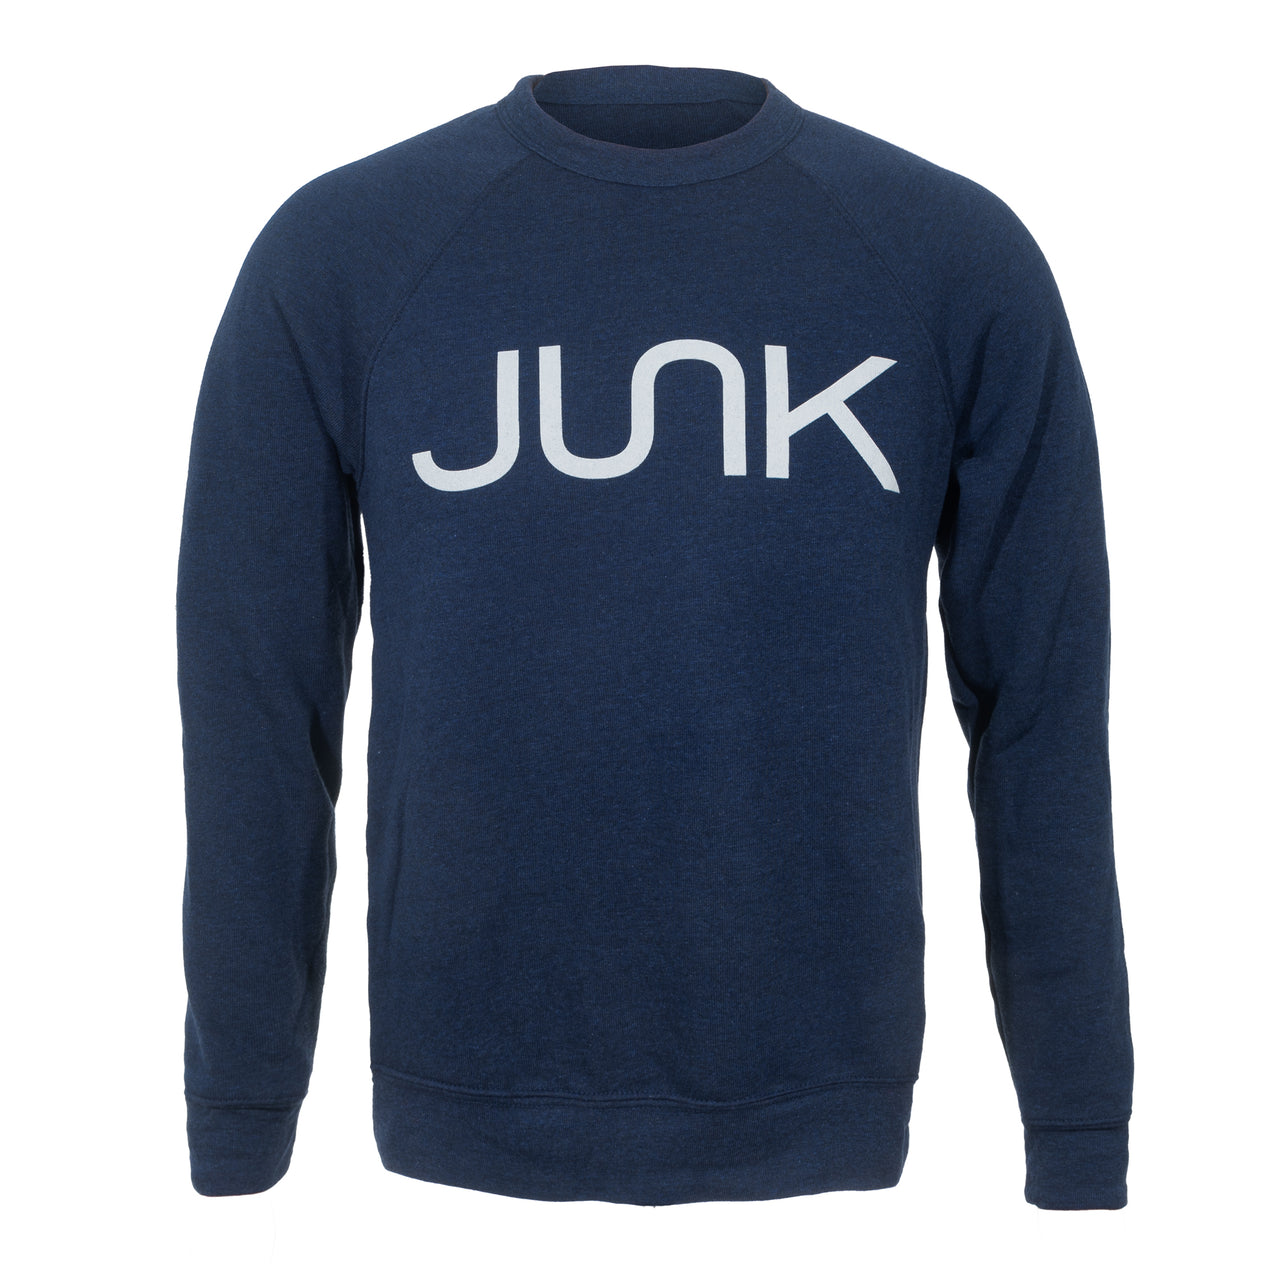 JUNK Heathered Navy Crew Sweatshirt - View 1